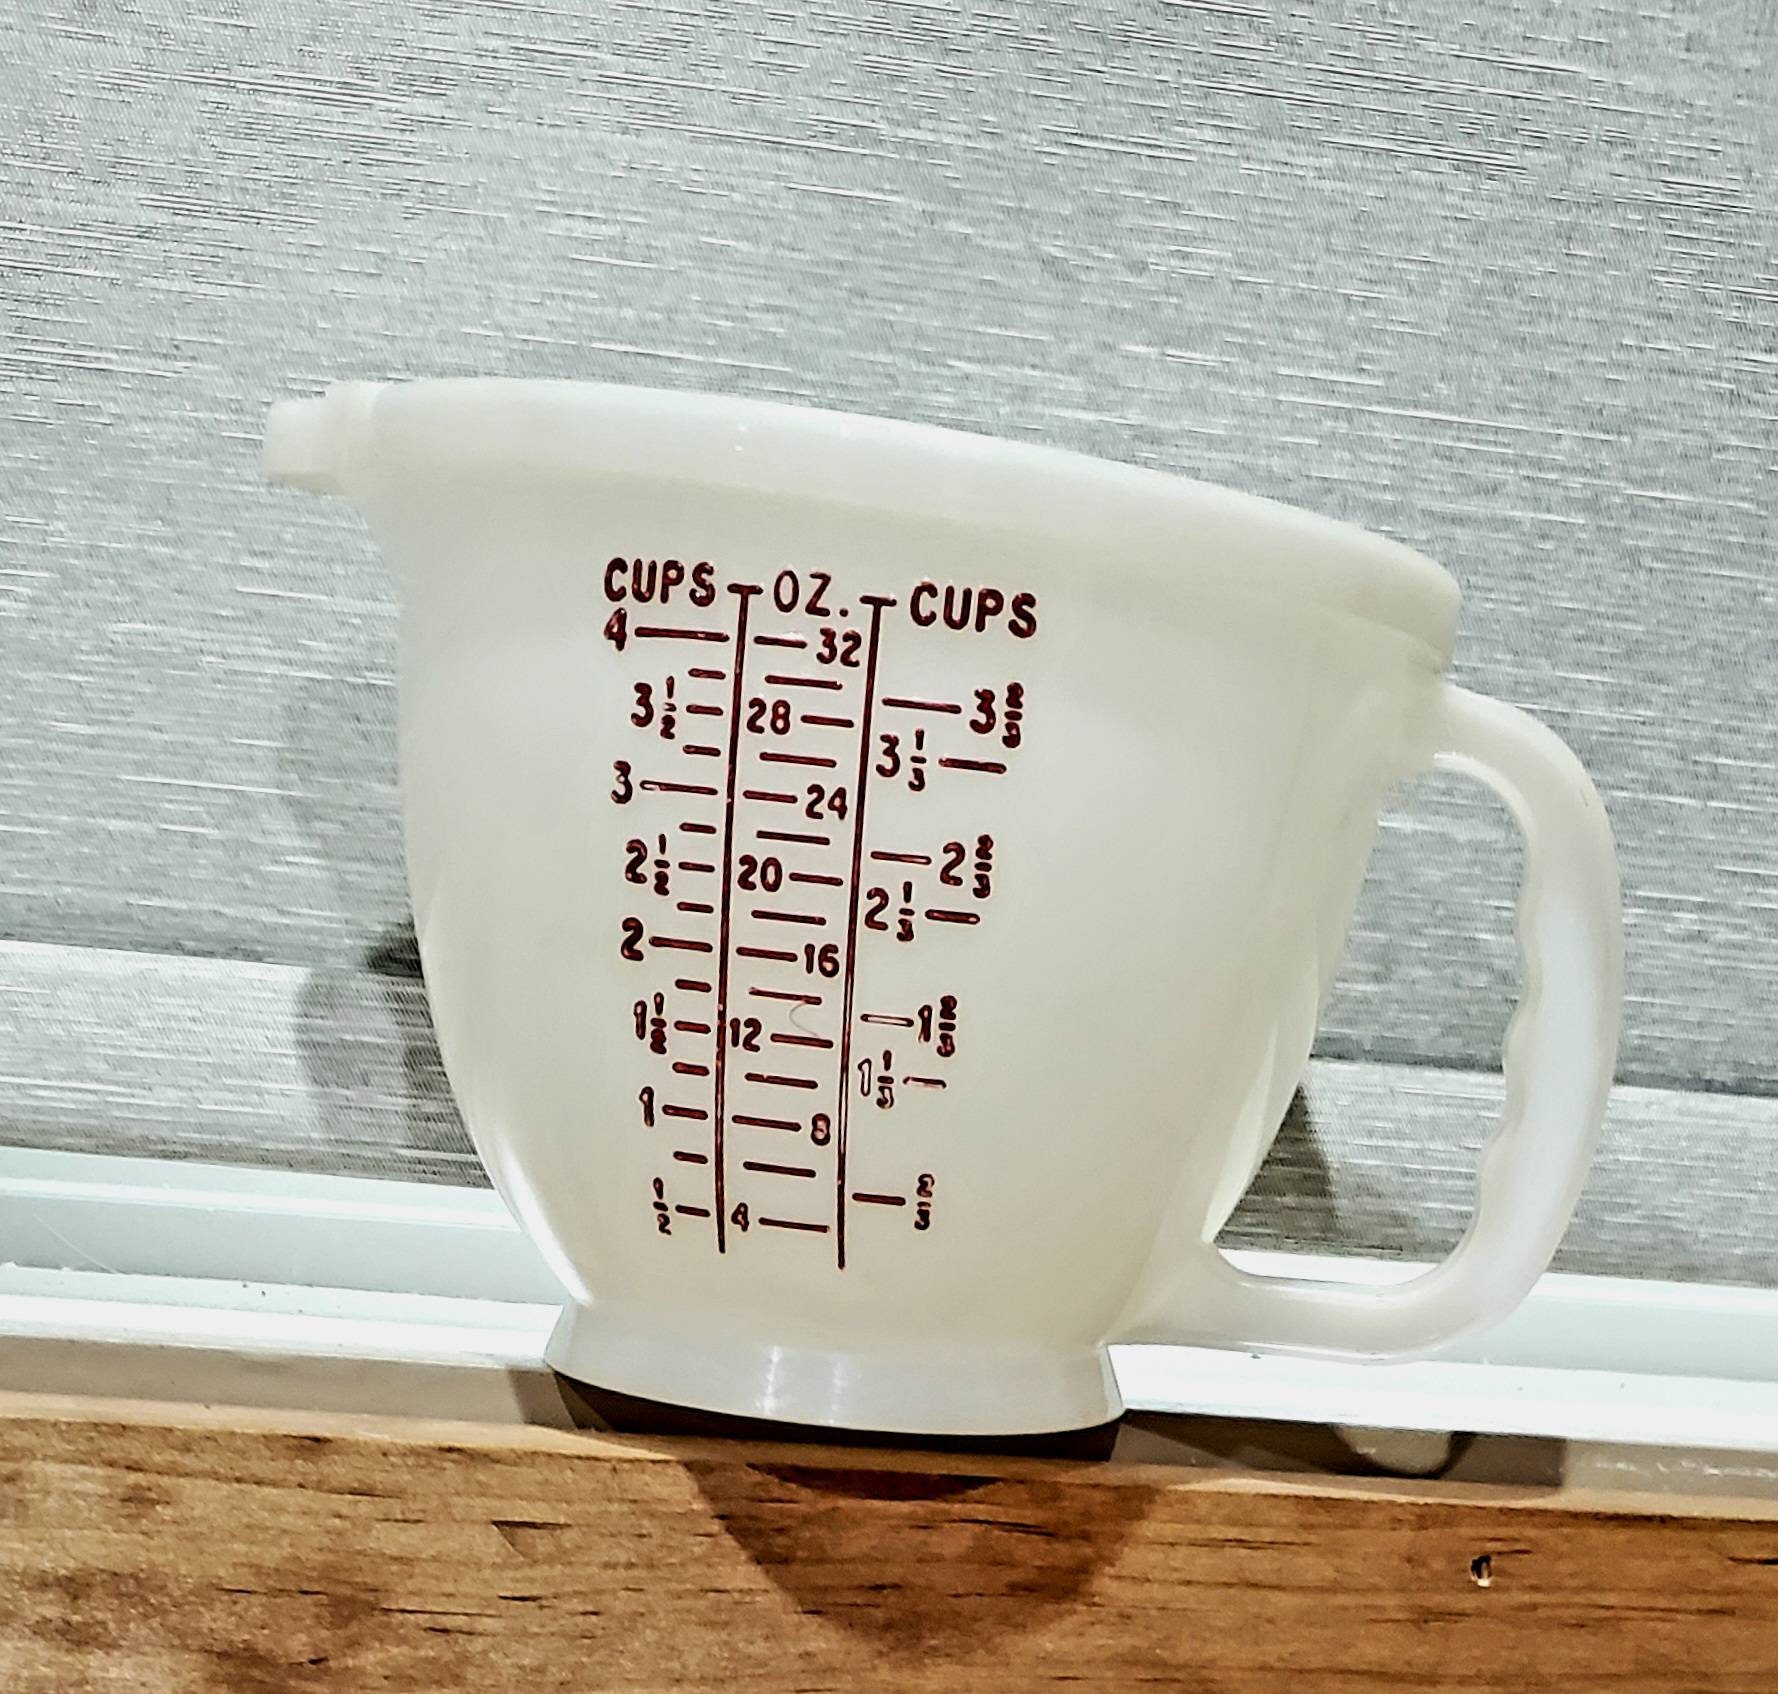 Tasse à mesurer Pyrex Original en verre - 4 tasses/1 L Tasse à